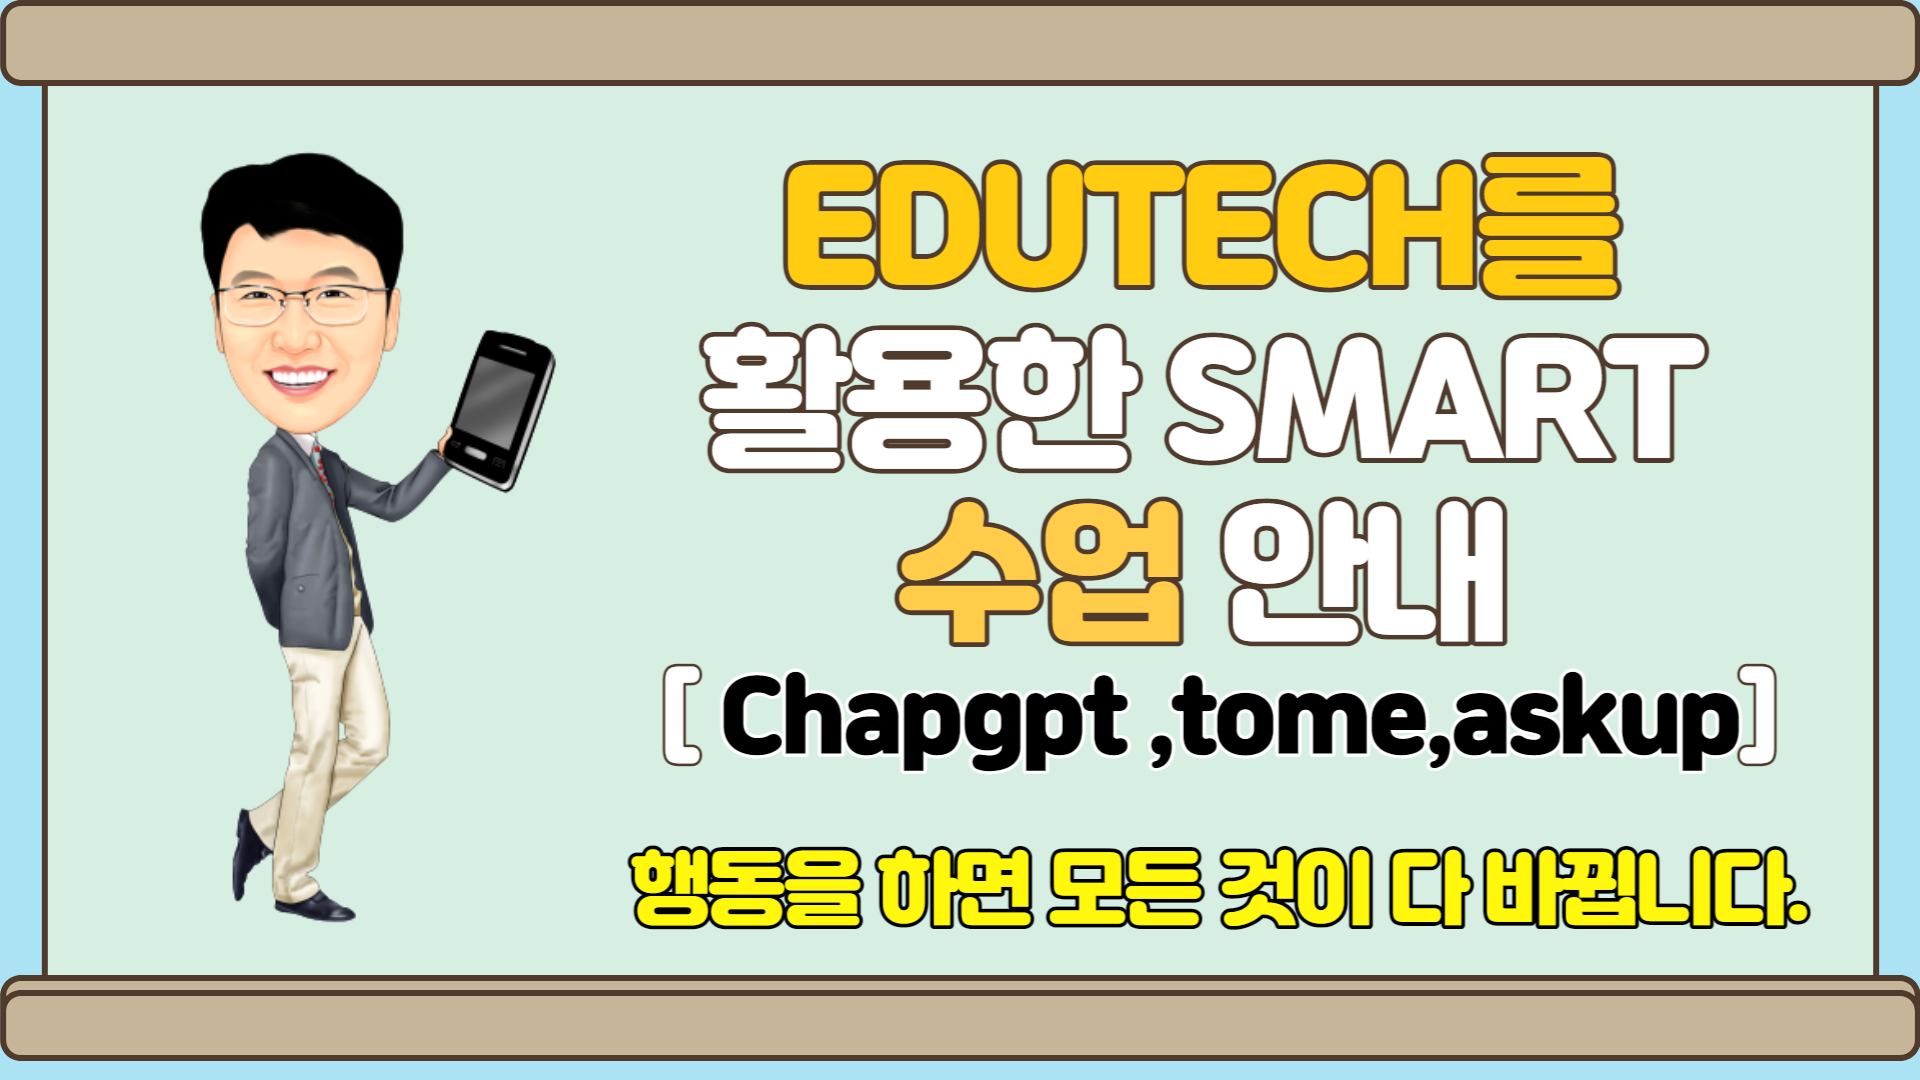 EDUTECH를 활용한 smart 수업 방법 안내 -ChatGPT 